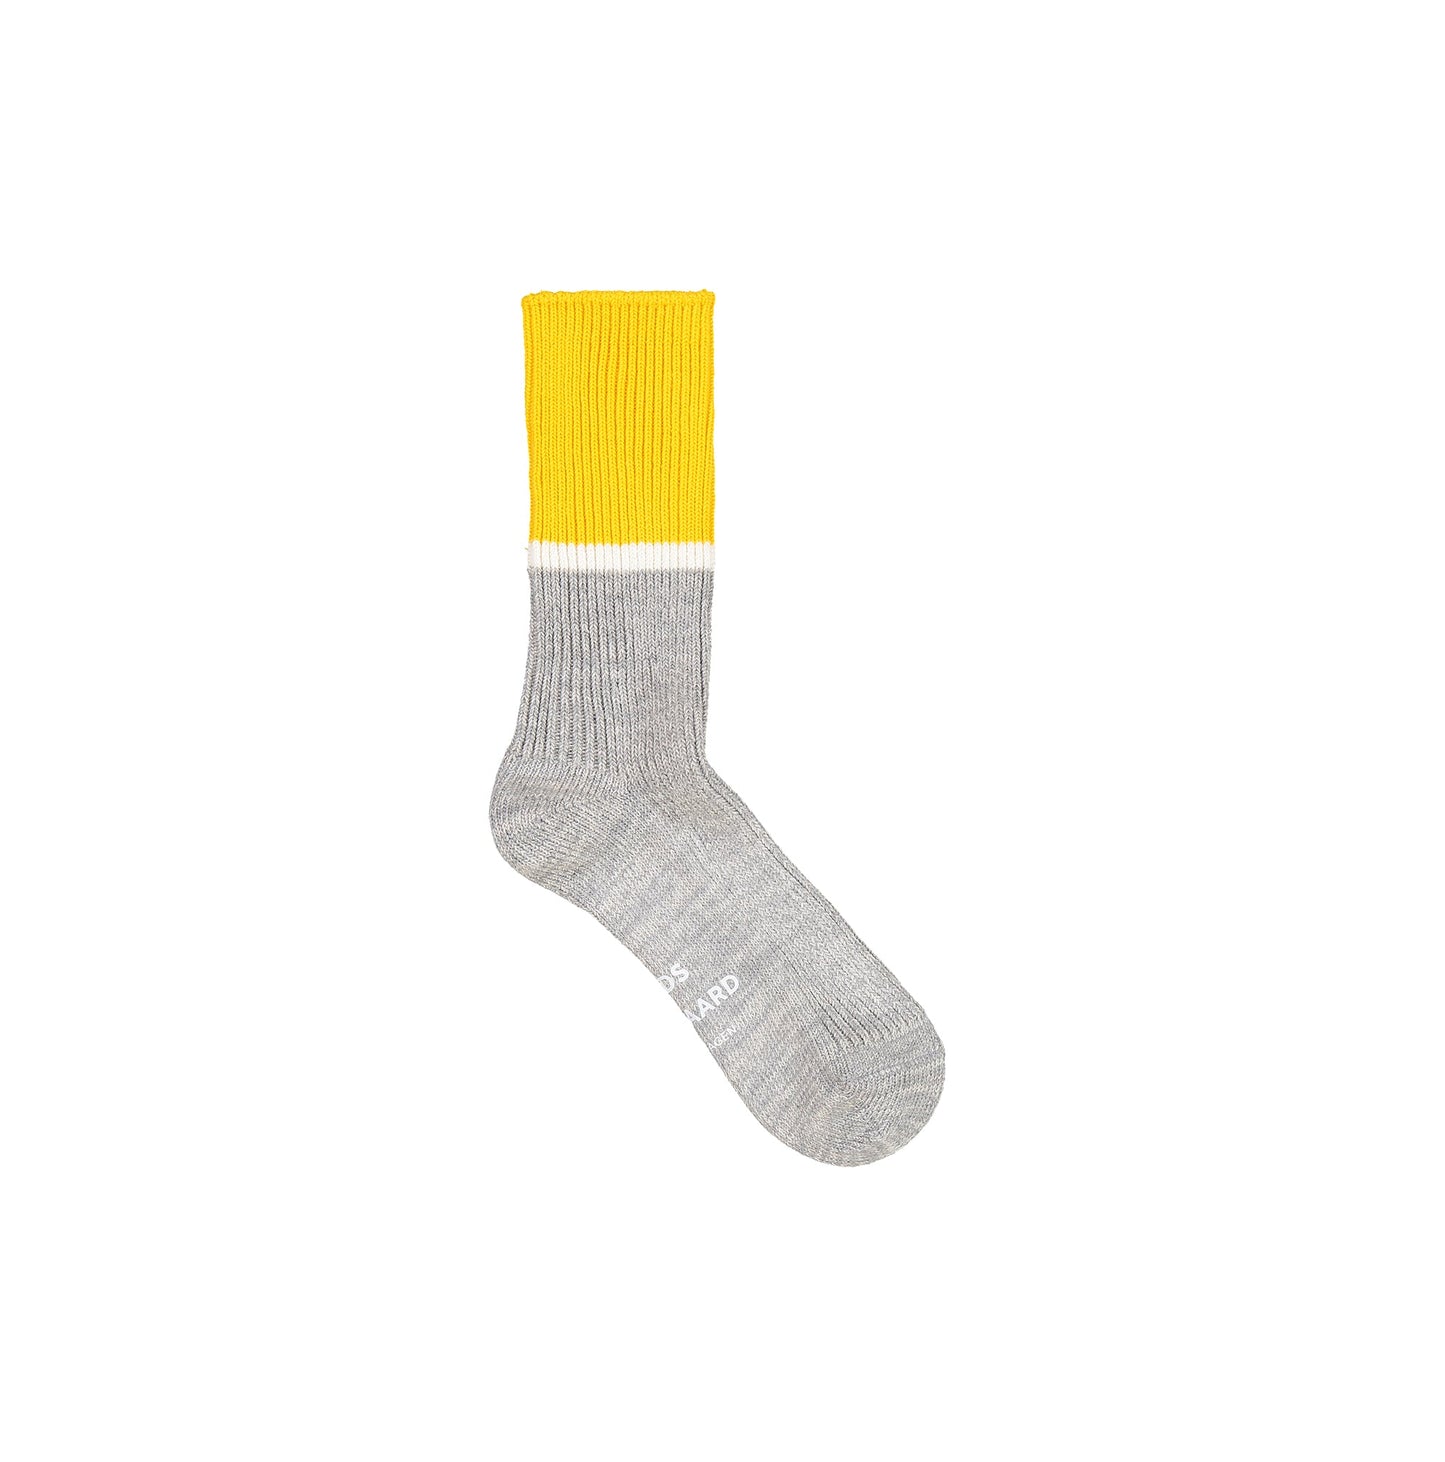 Rag Socca Aragga,  Grey/Yellow